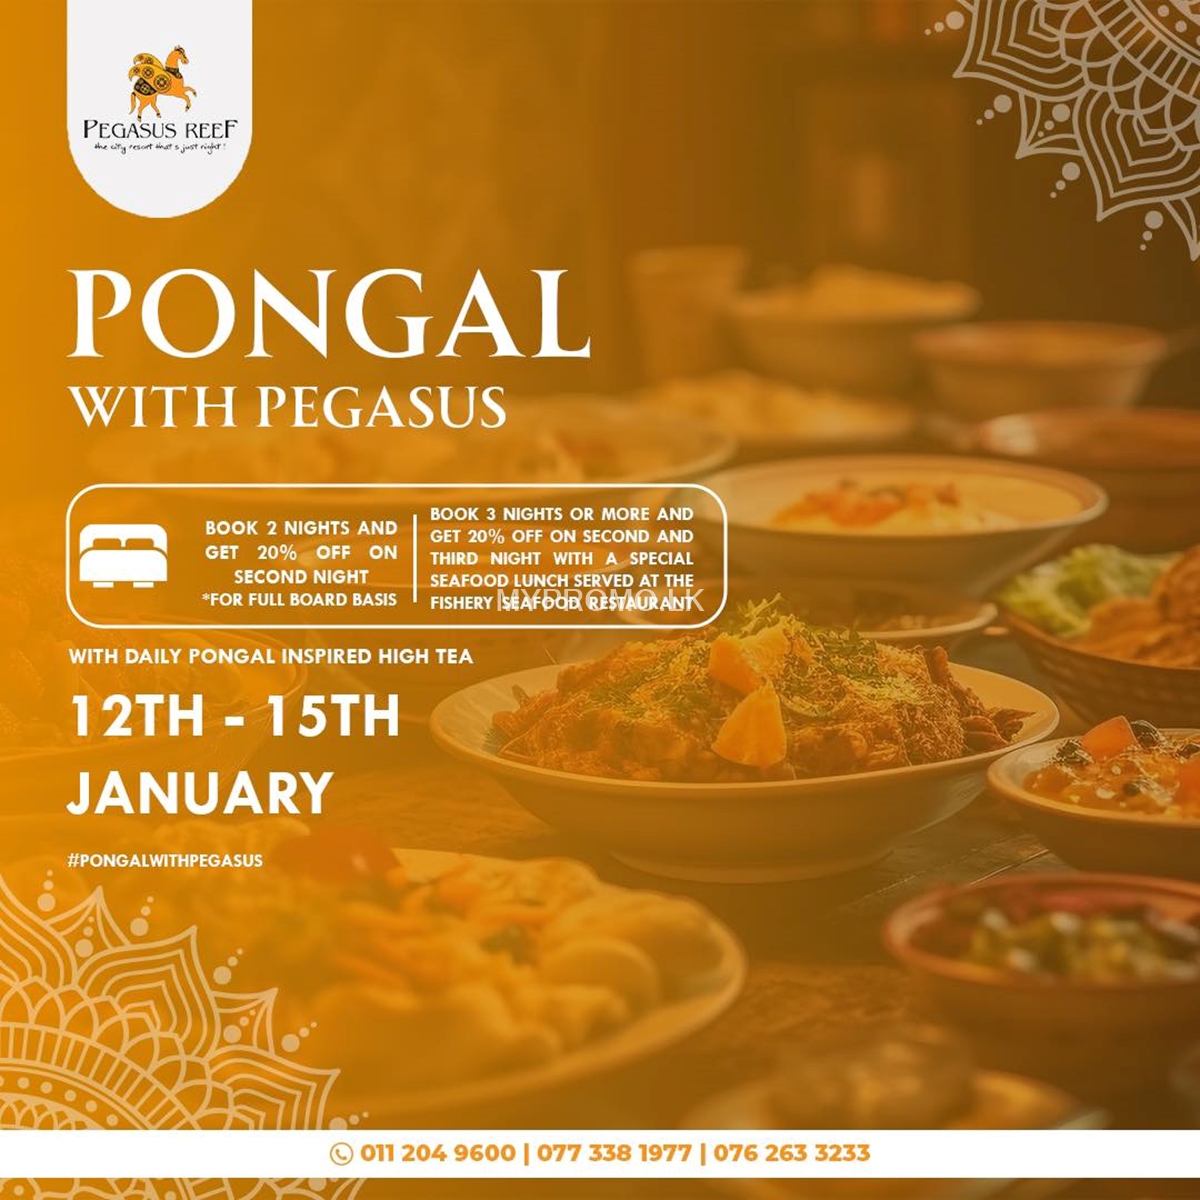 Celebrate Thai Pongal Long Weekend at Pegasus Reef Hotel